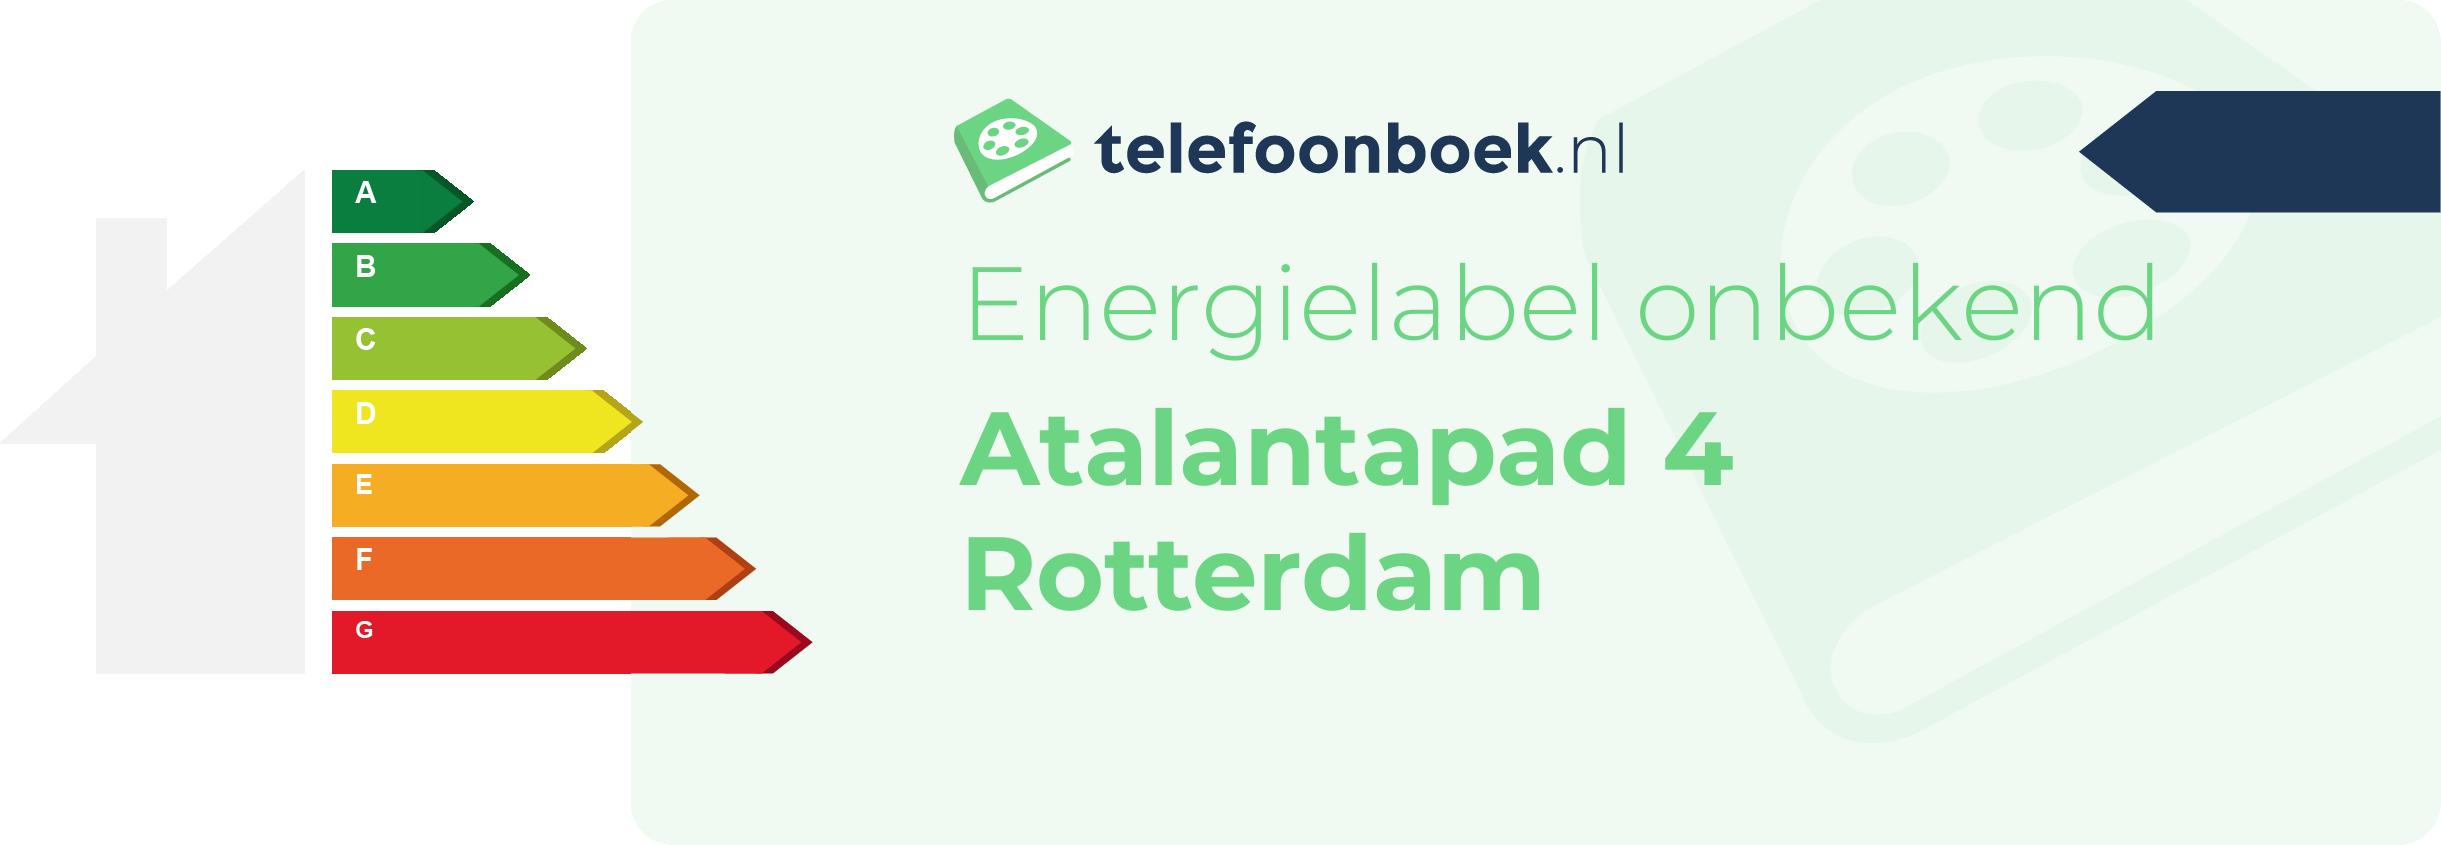 Energielabel Atalantapad 4 Rotterdam